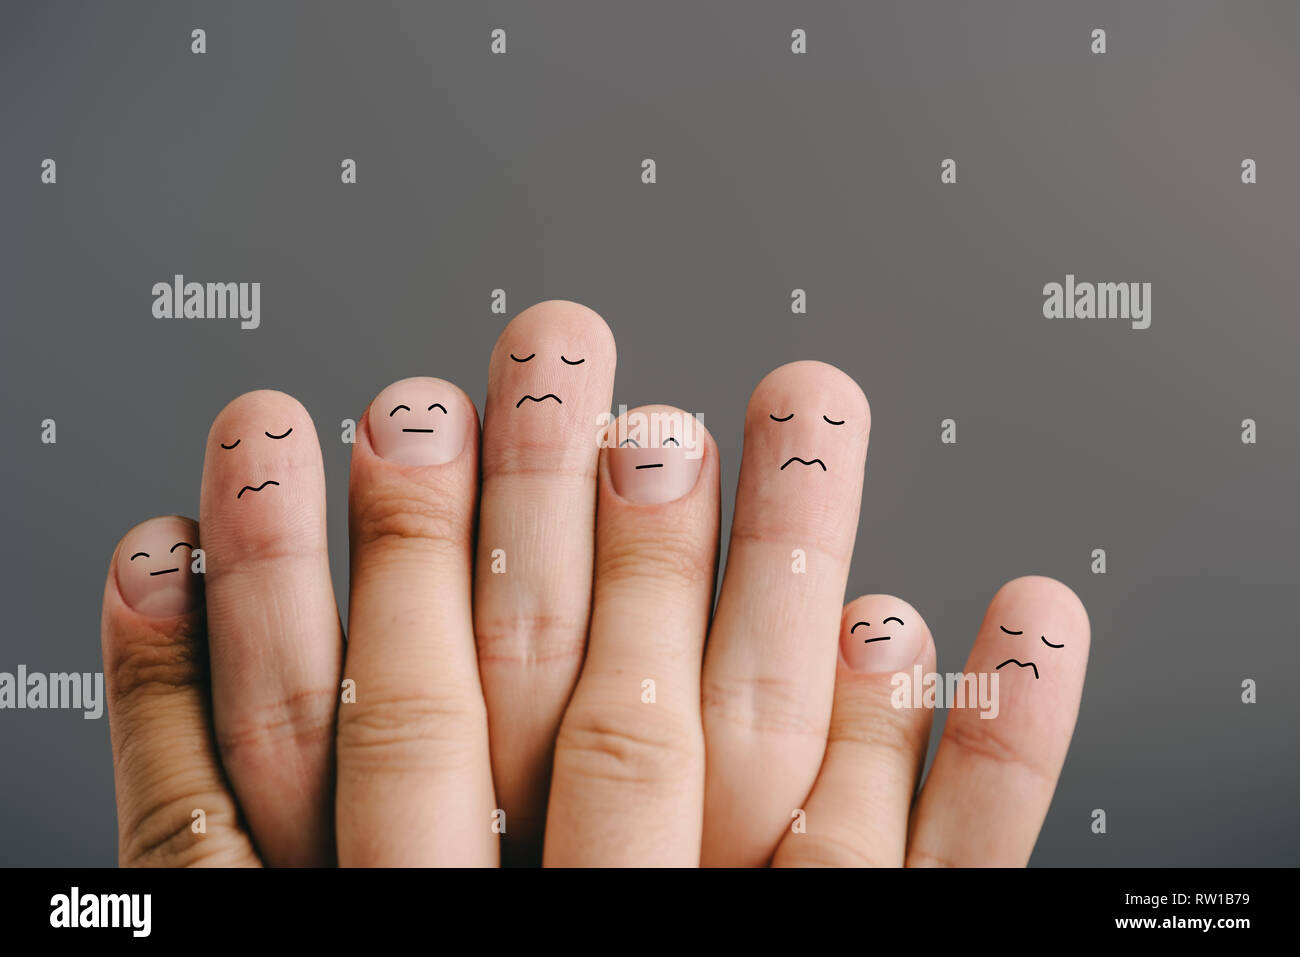 Ковид пальцы. Эмоции на пальцах. Семья в виде пальцев. Пальцы с разными текстурами.